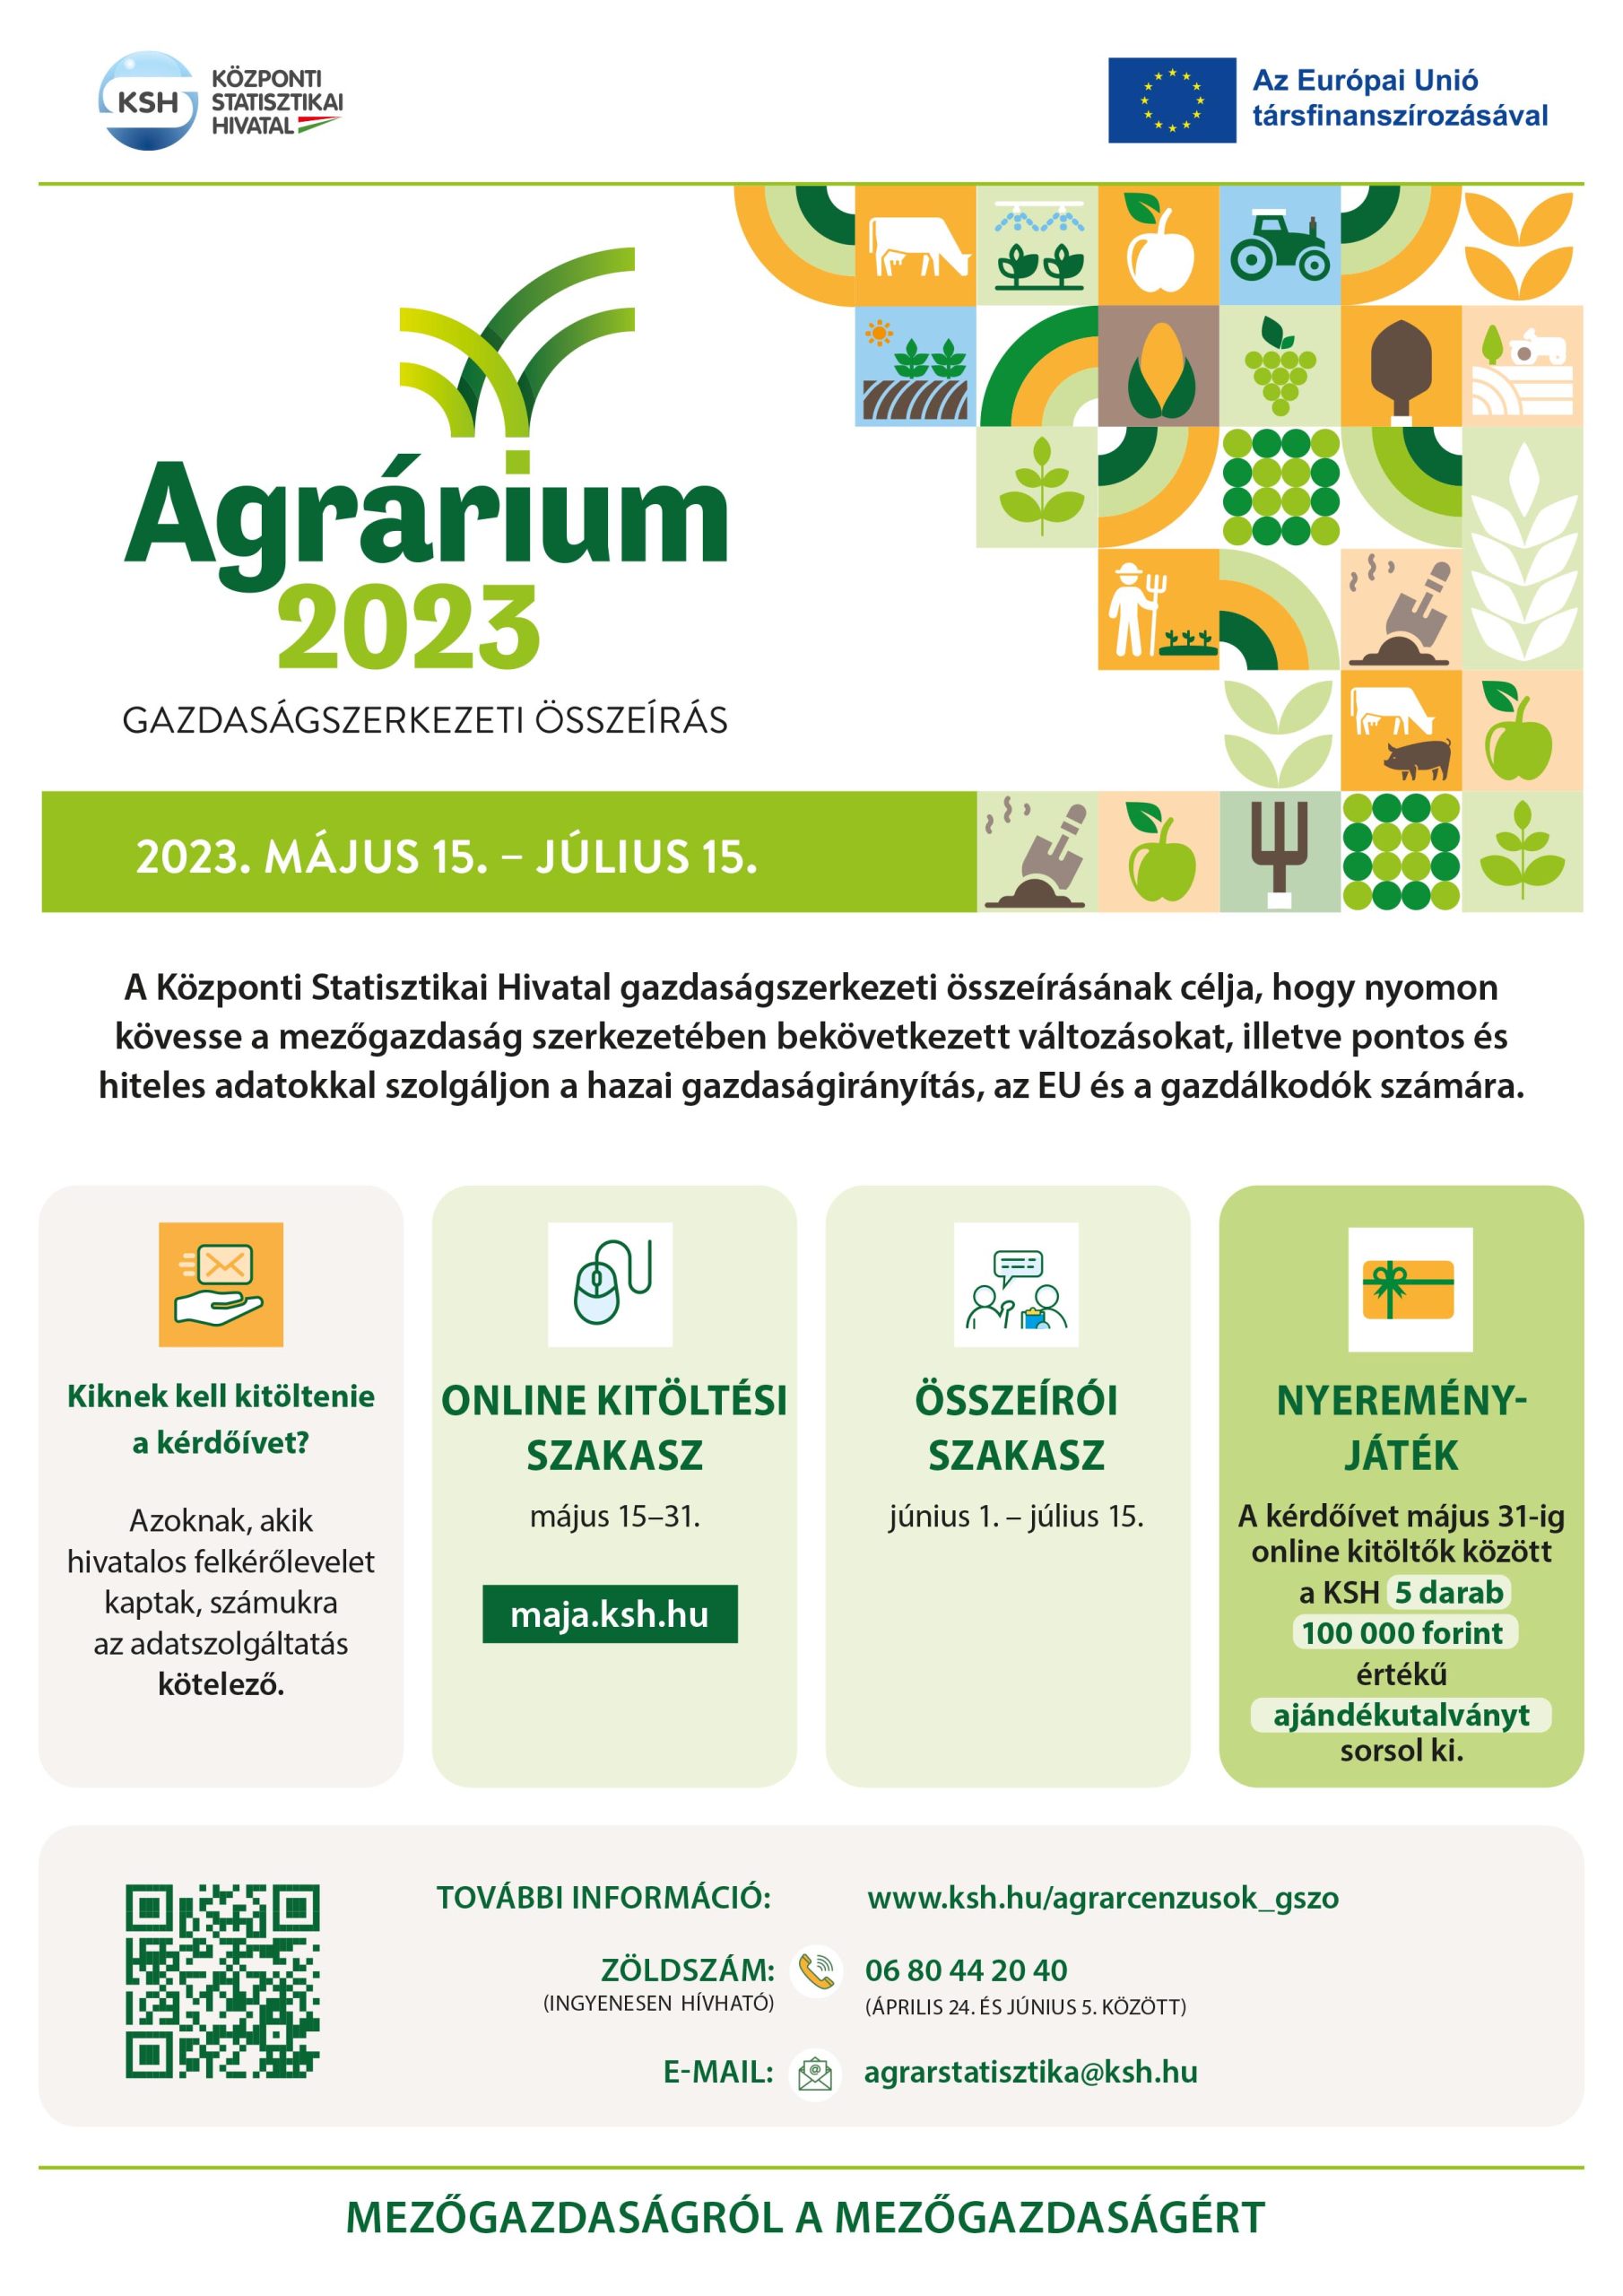 Agrárium 2023 – Gazdaságszerkezeti összeírás